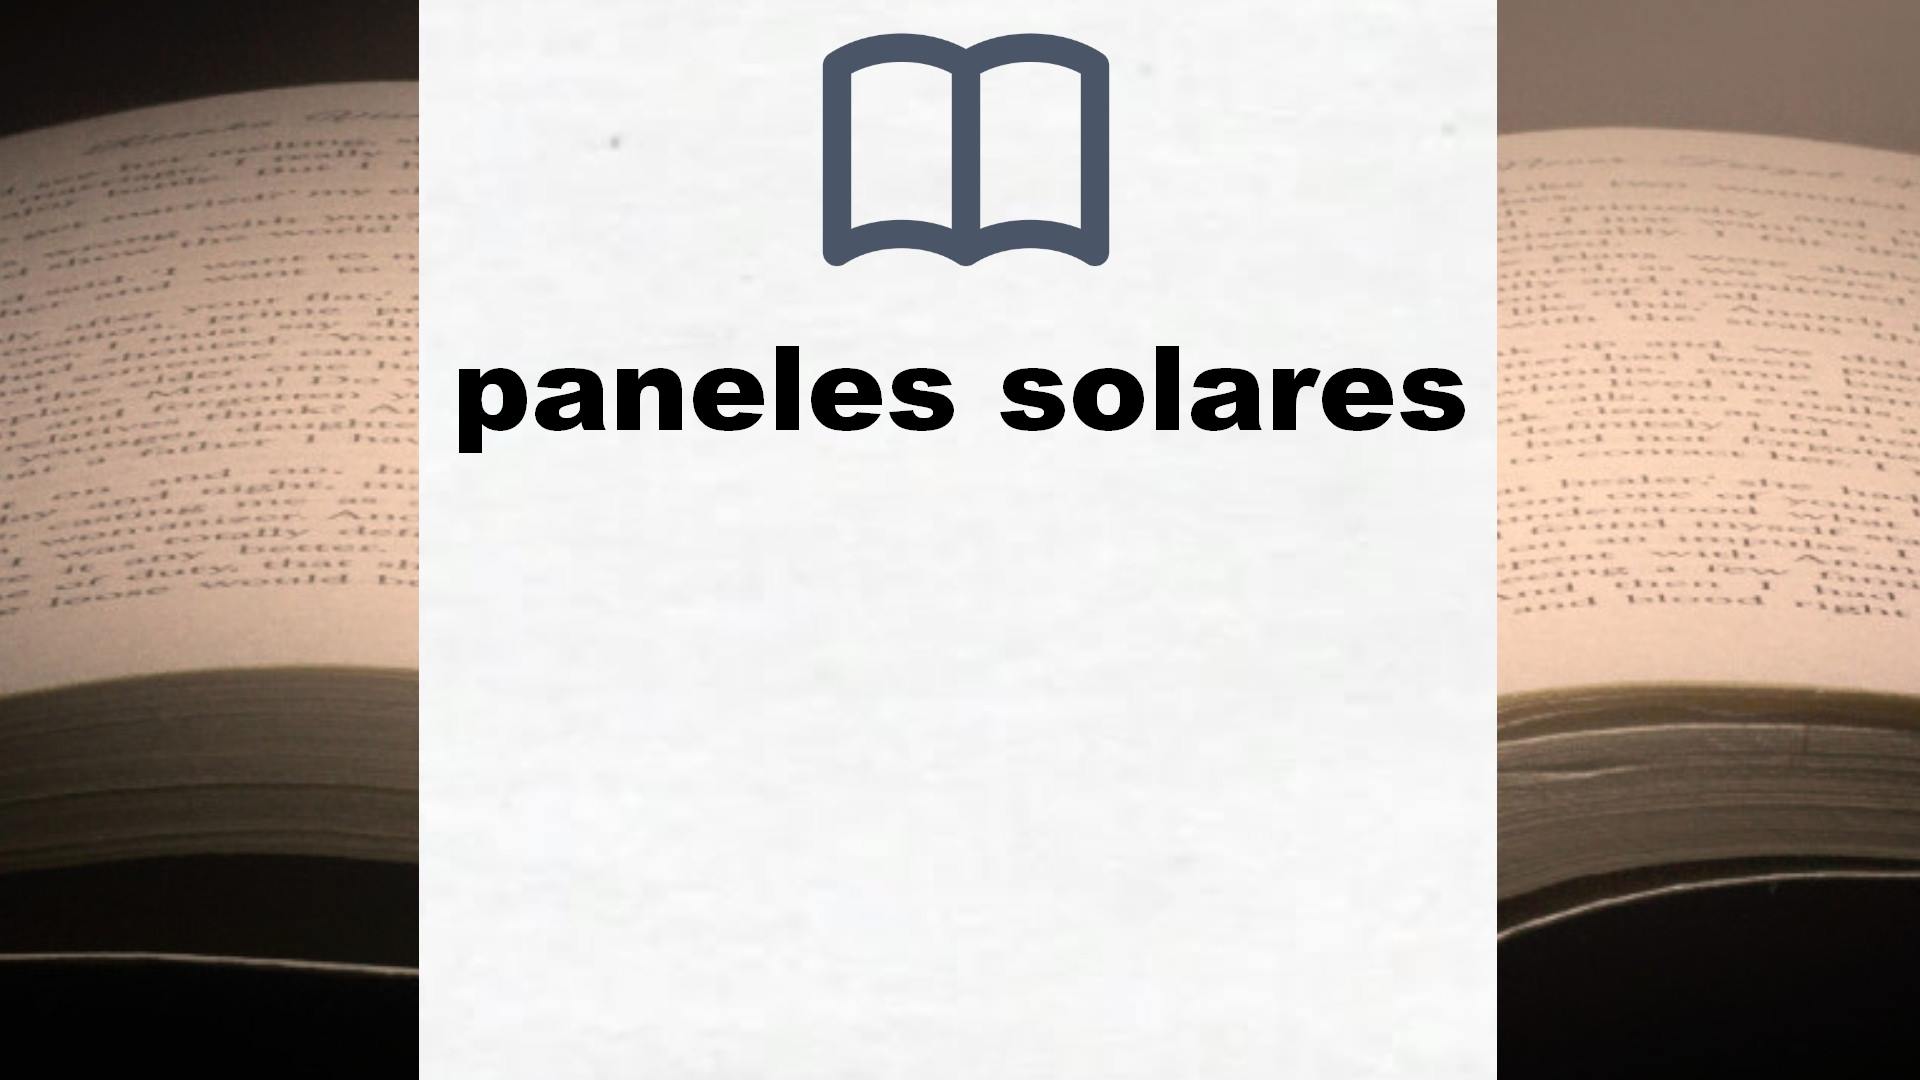 Libros sobre paneles solares